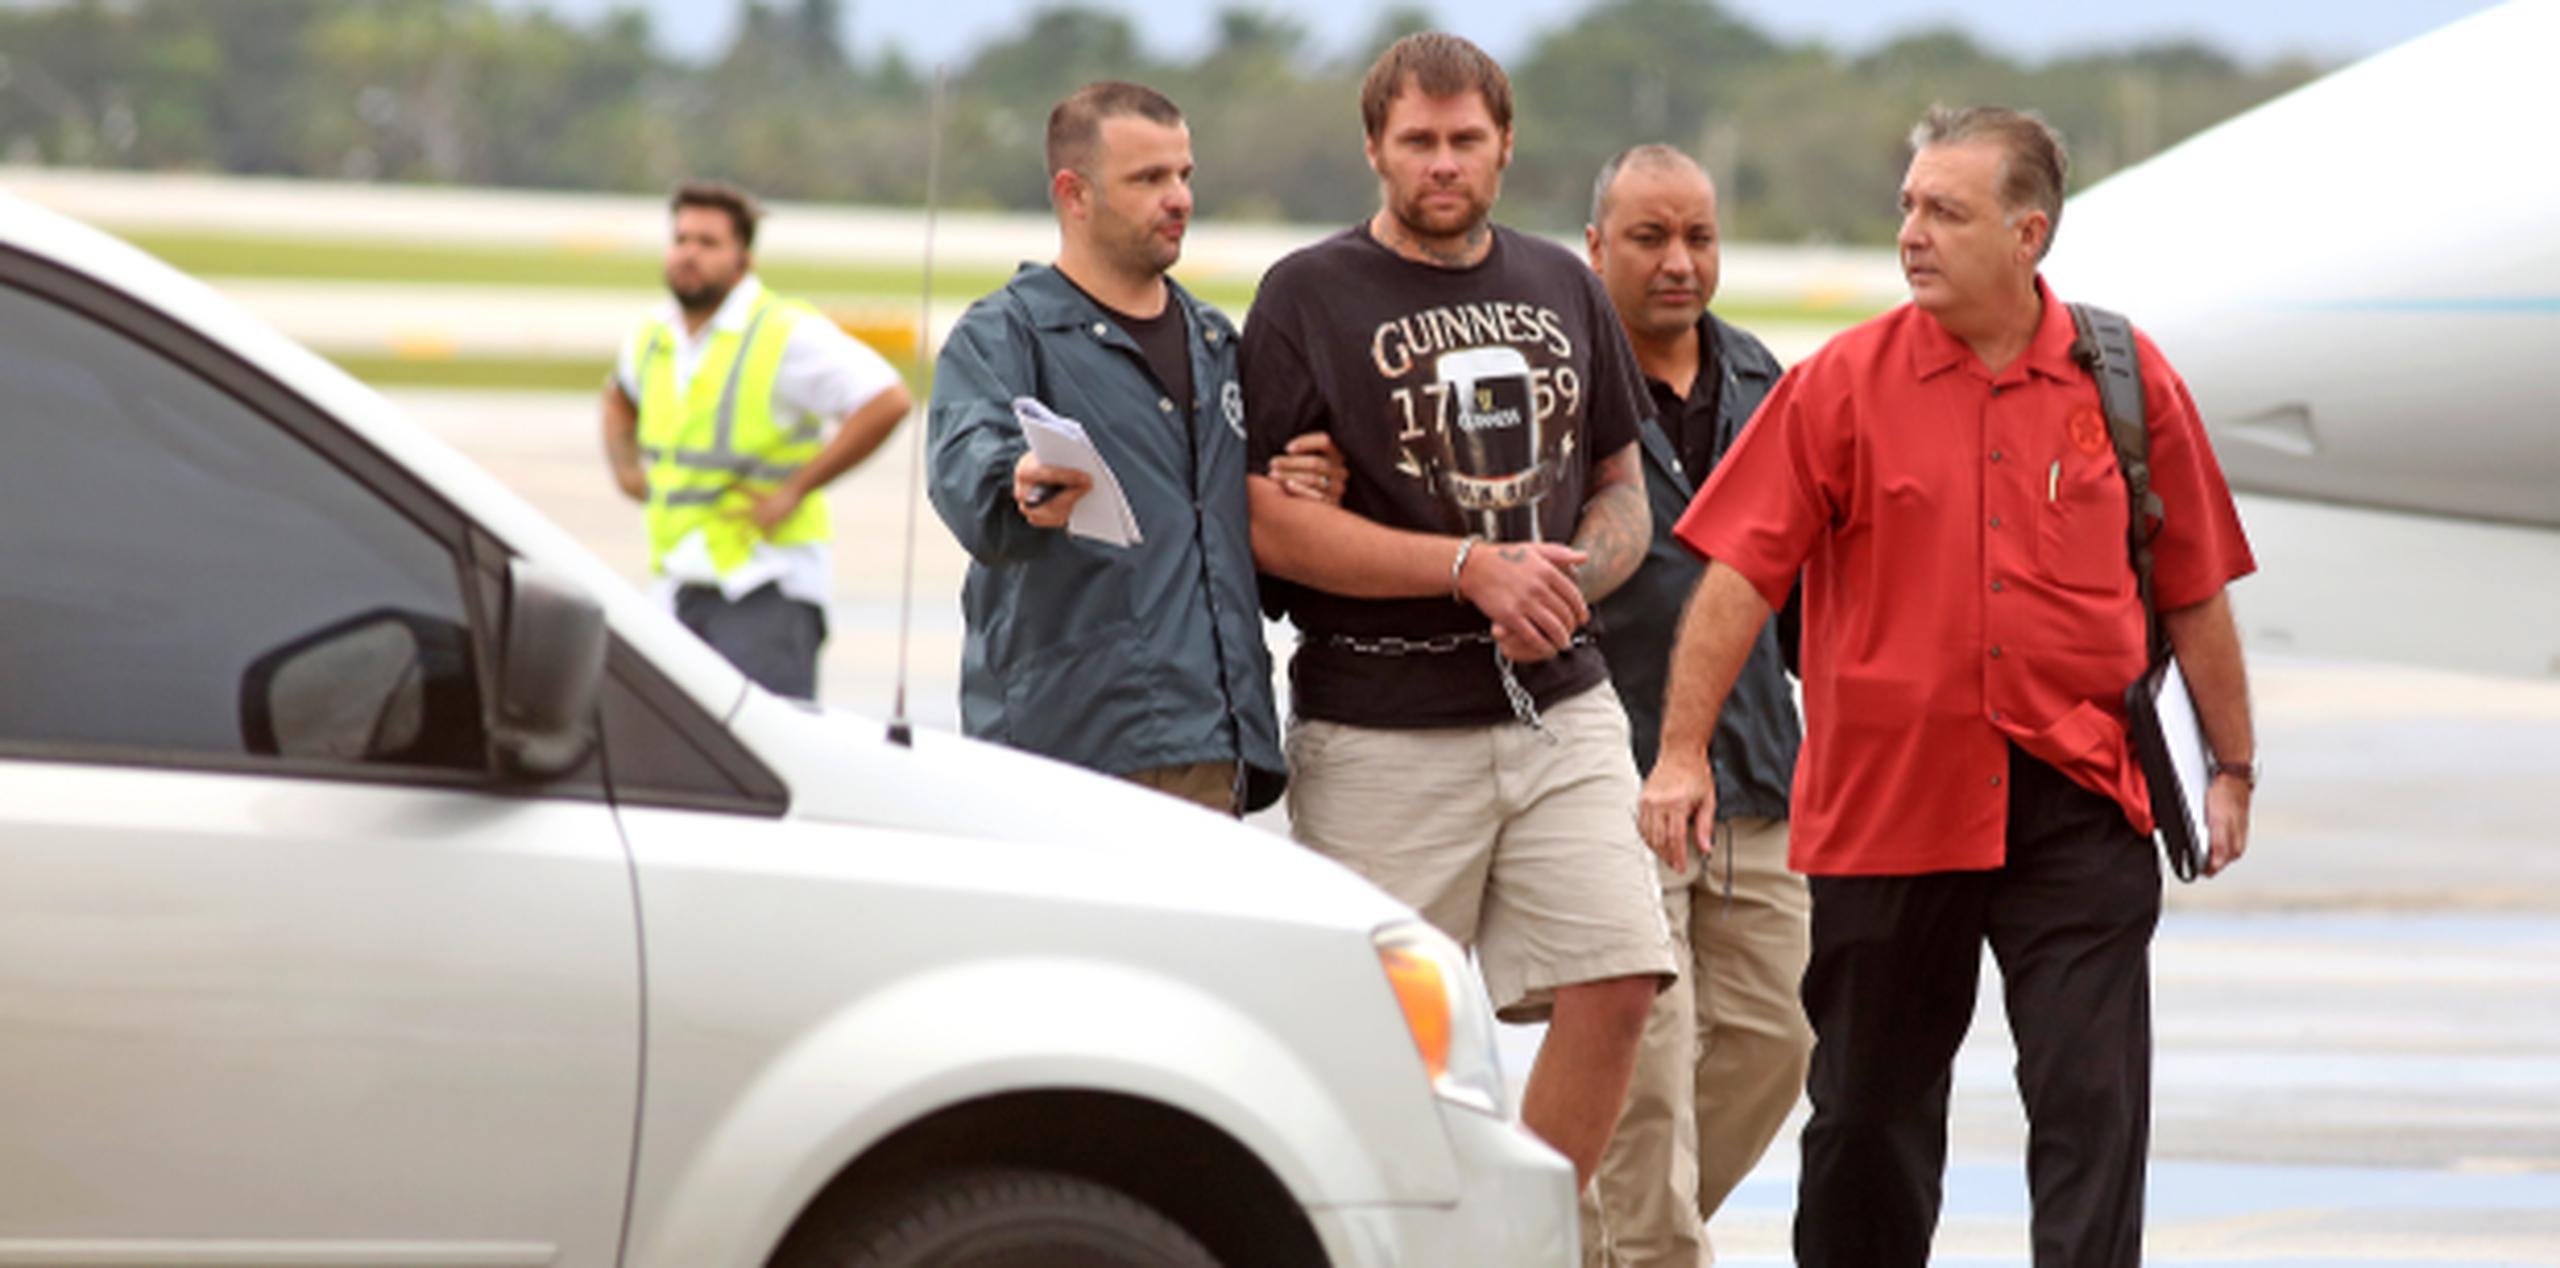 Algauciles federales escoltan a Shawn Wegmann en el aeropuerto de Fort Lauderdale/Hollywood, a donde fue llevado luego que lo entregaran las autoridades cubanas. (Susan Stocker/South Florida Sun-Sentinel via AP)